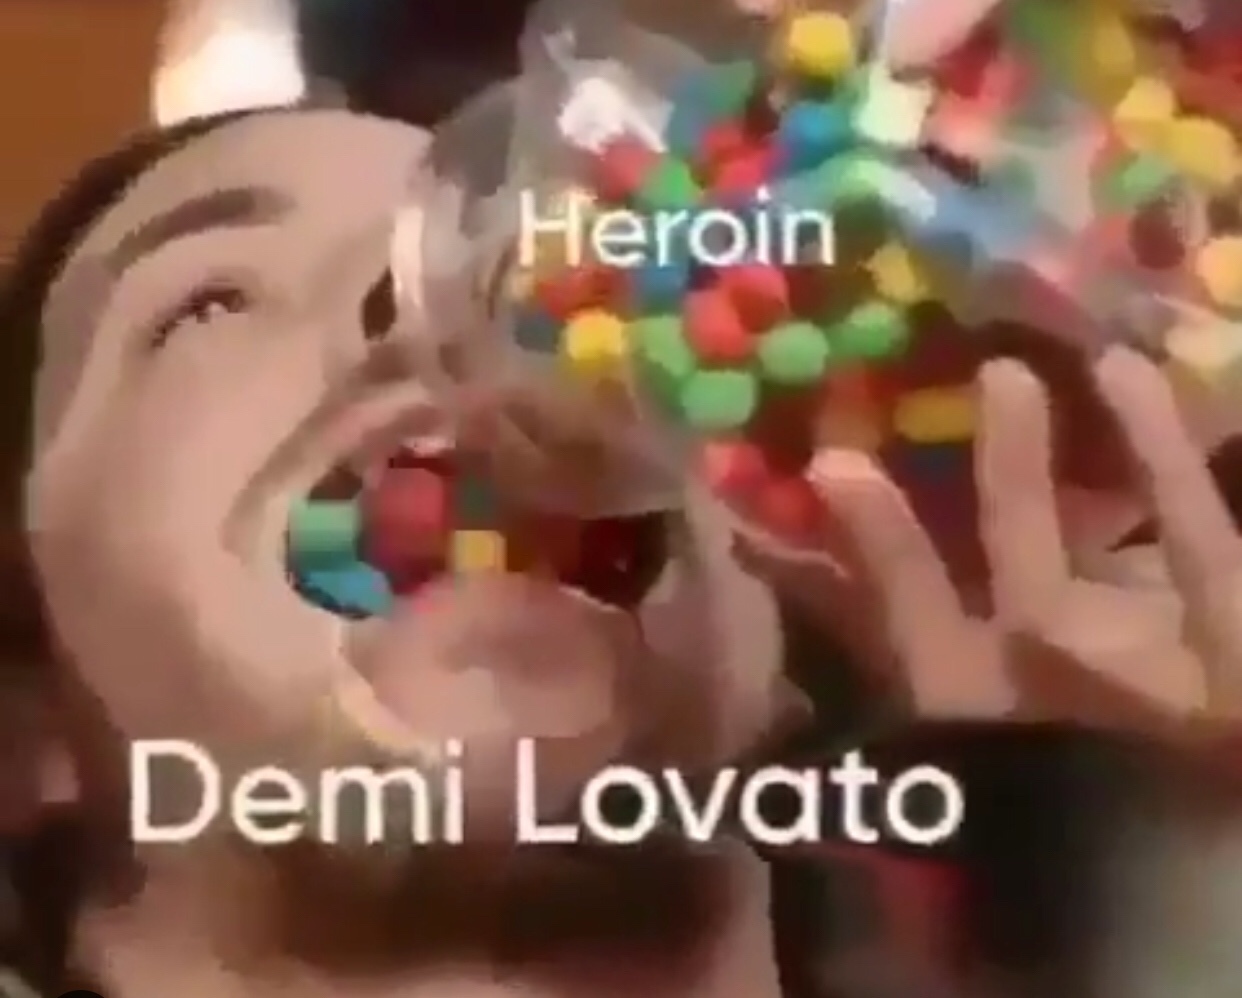 Demi Lovato loves her some tasty heroin - meme